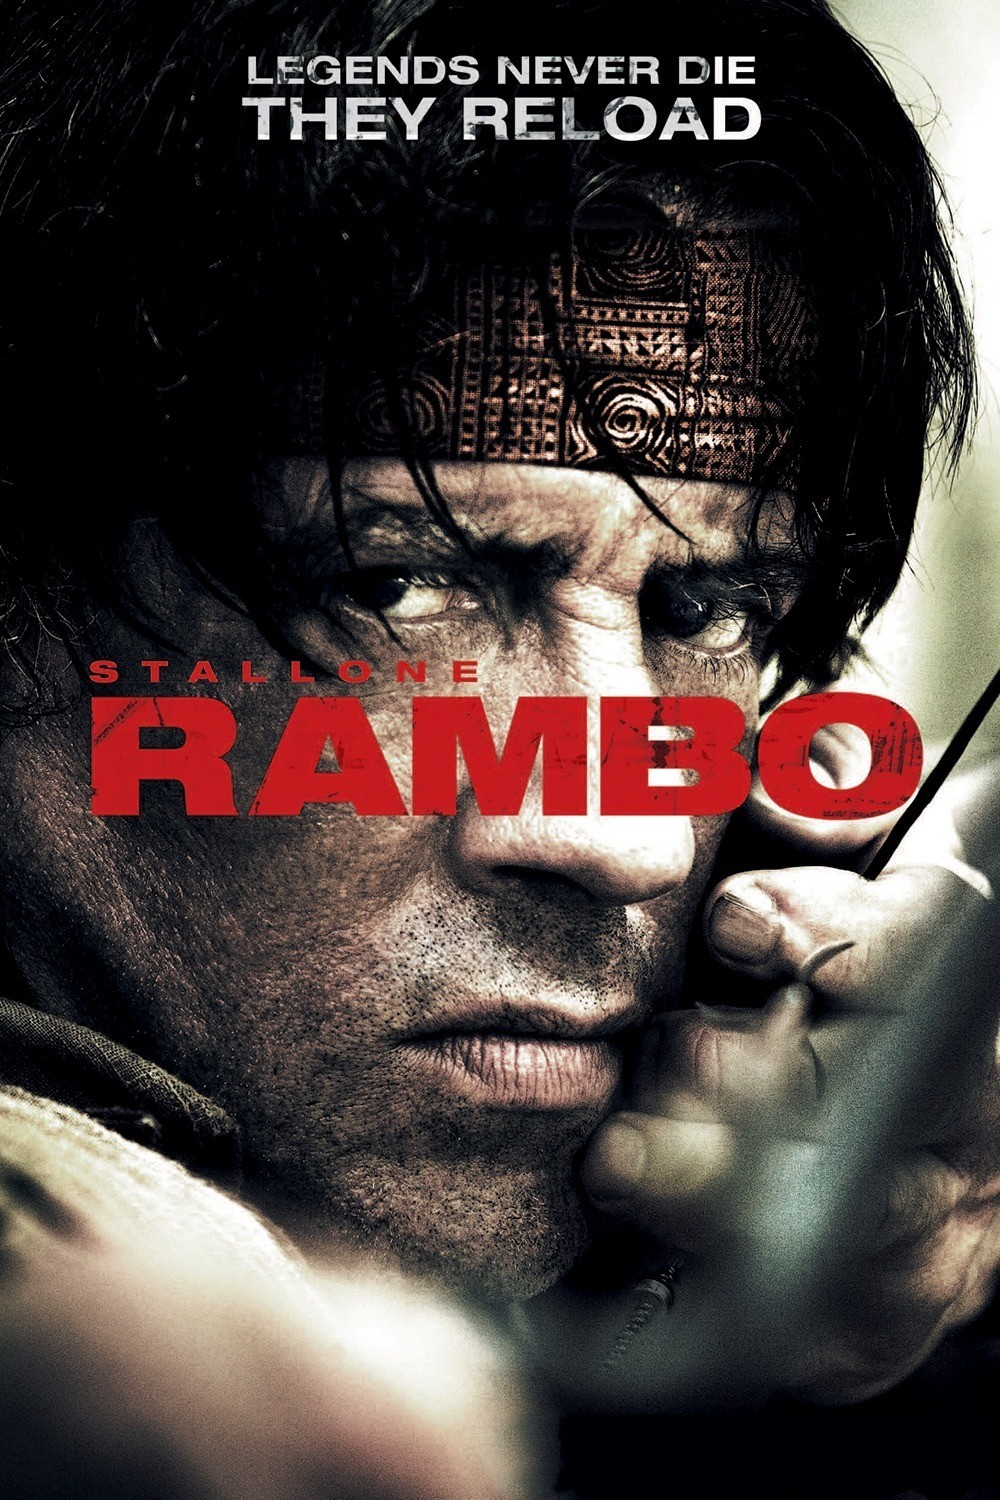 John Rambo online